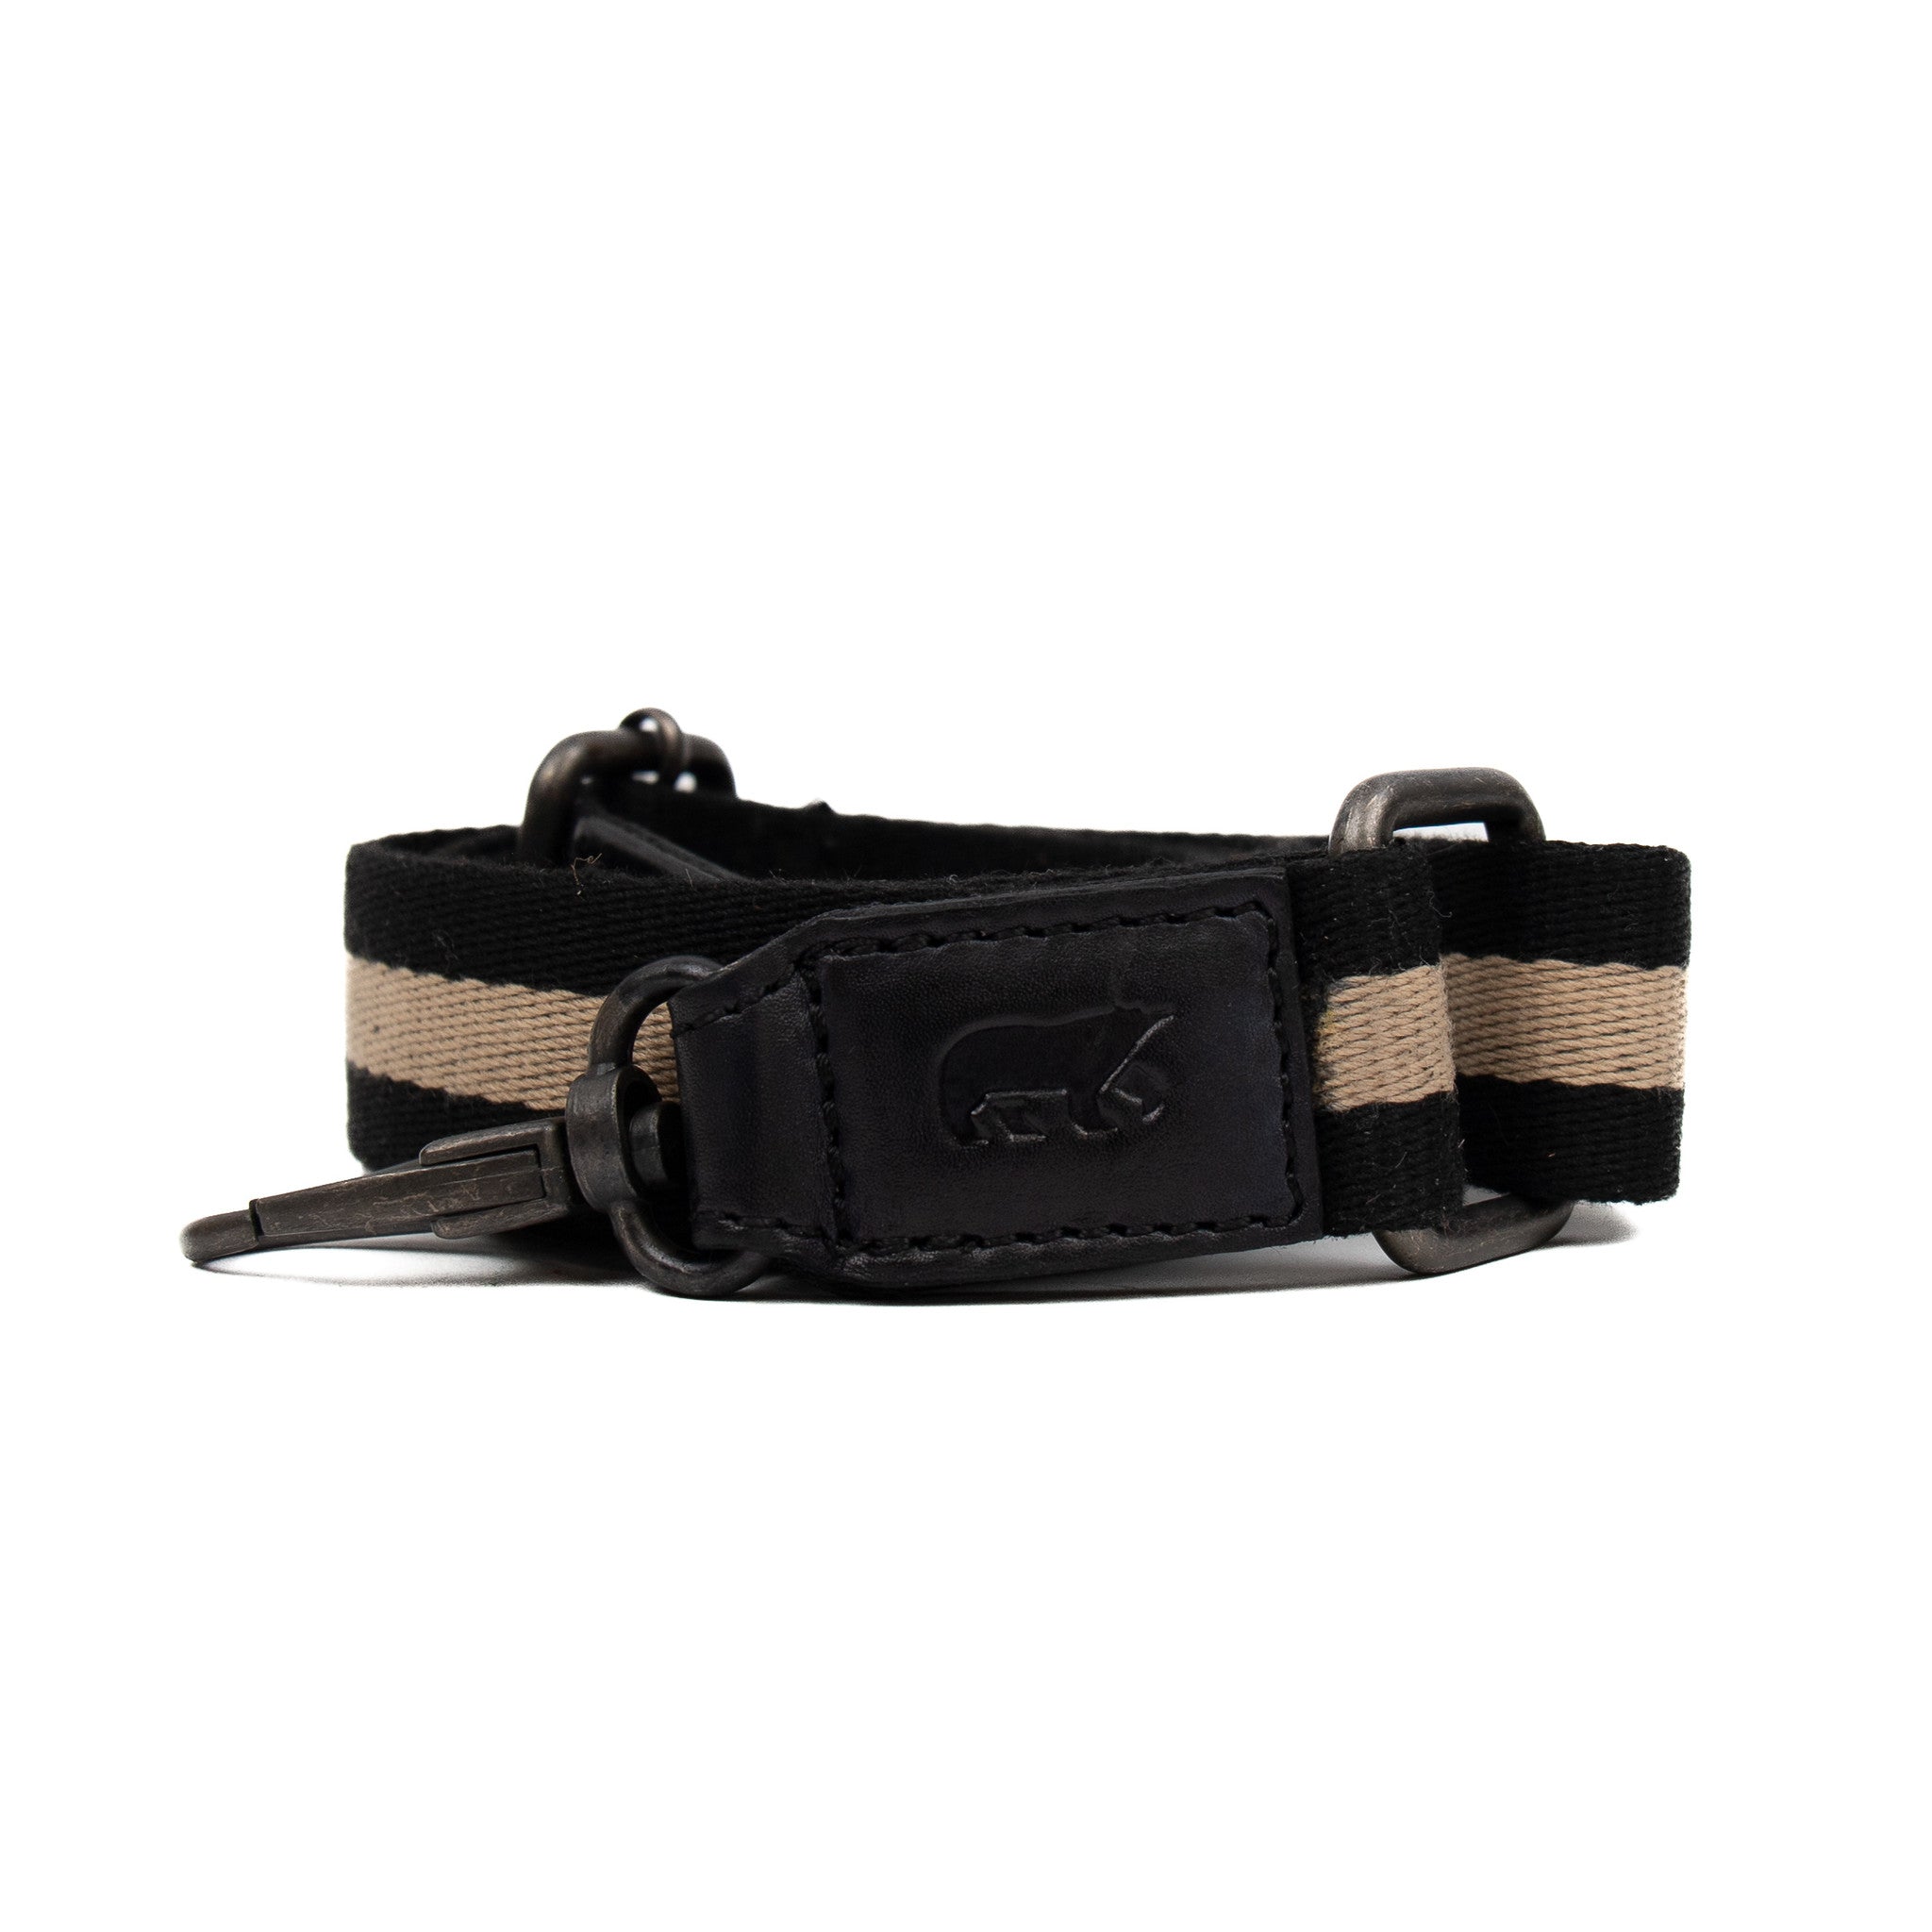 Bag strap 'Micky' black/beige/black